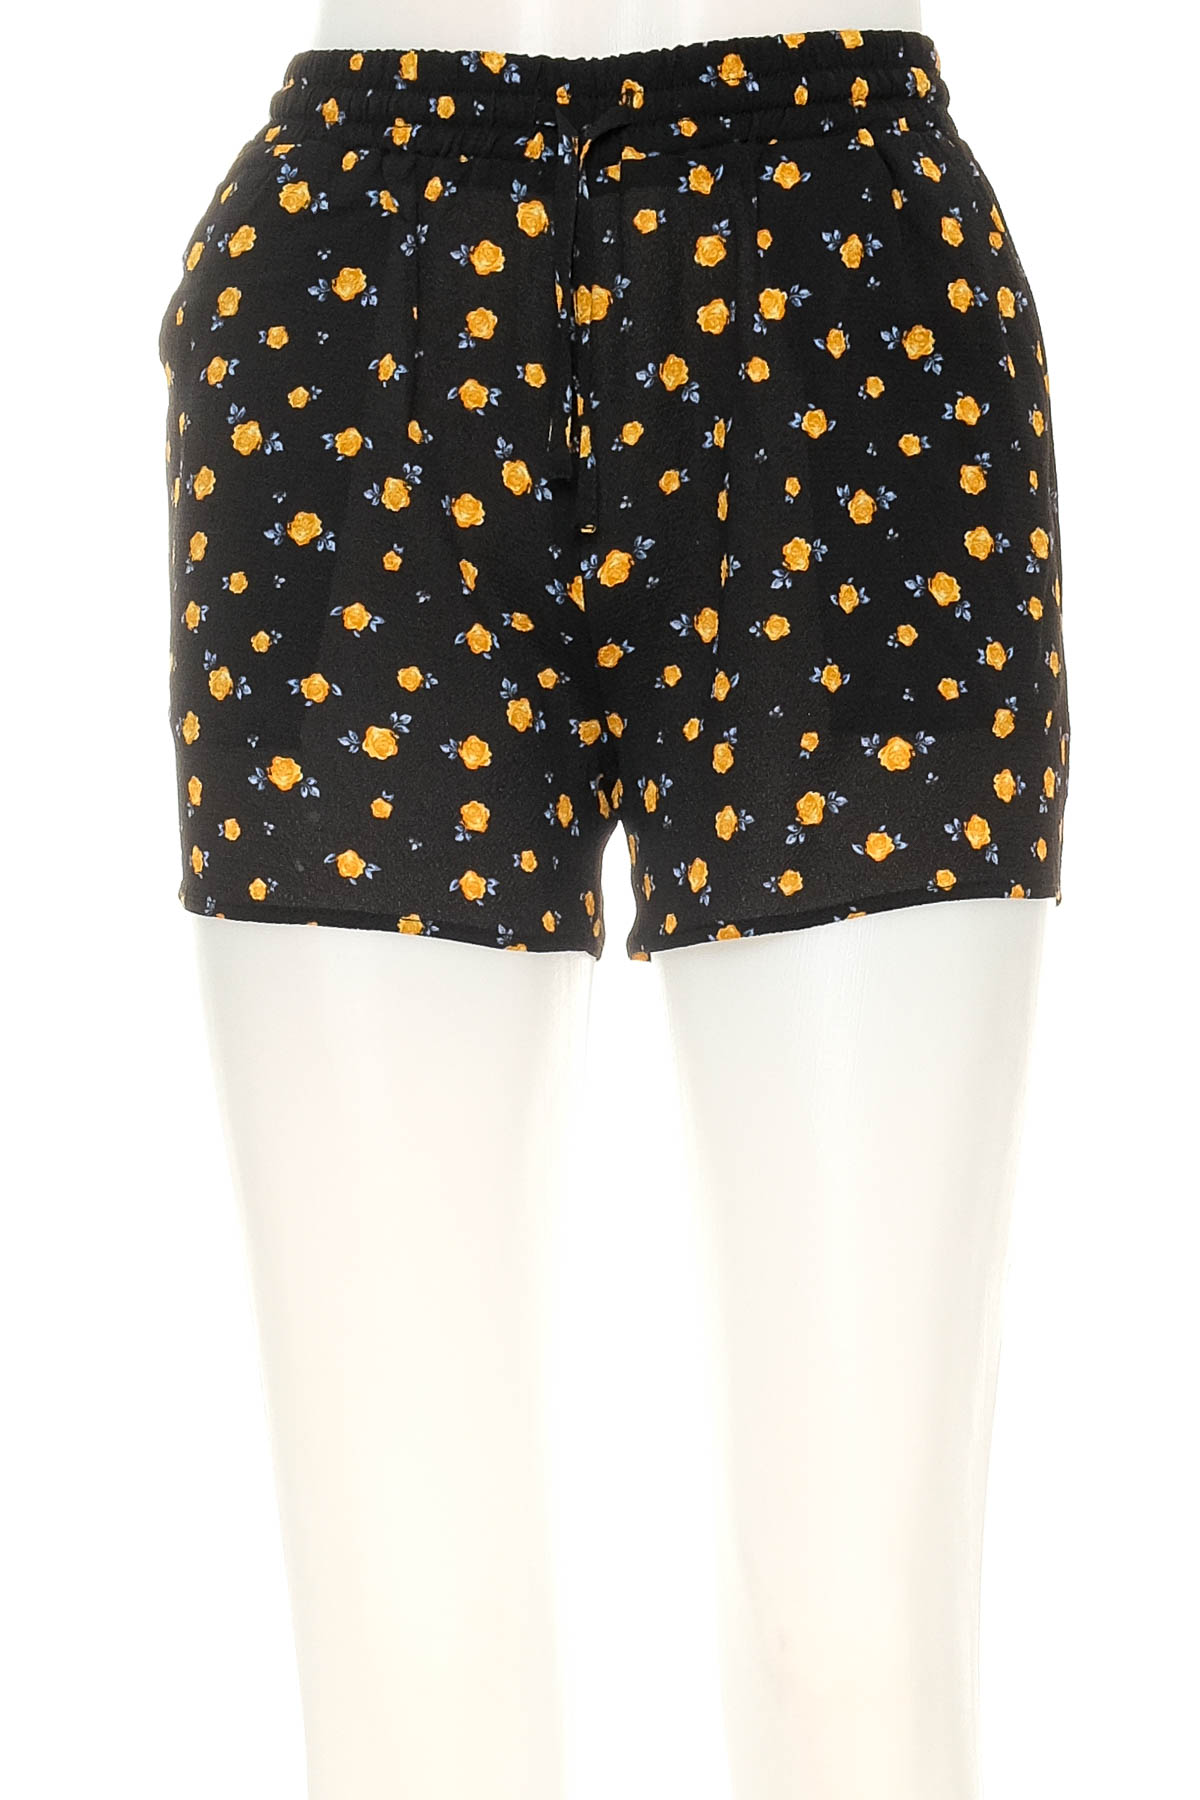 Female shorts - Groggy by jbc - 0